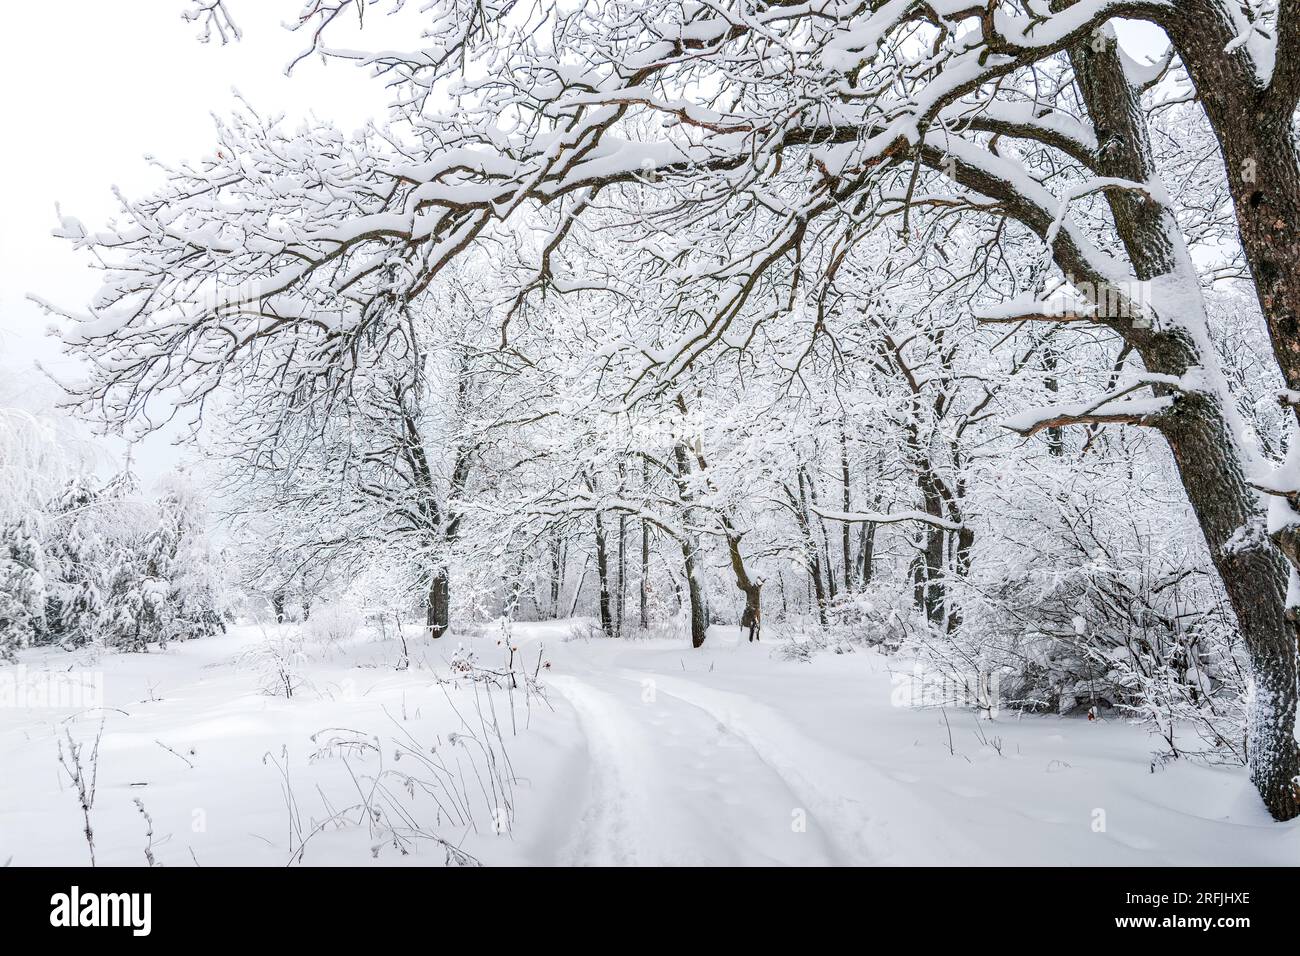 Hintergrund des Winterwaldes. Winterwaldlandschaft. Malerisches Bild eines Baumes. Frostiger Tag, ruhige winterliche Szene. Skigebiet. Ein tolles Bild von der wilden Gegend Stockfoto